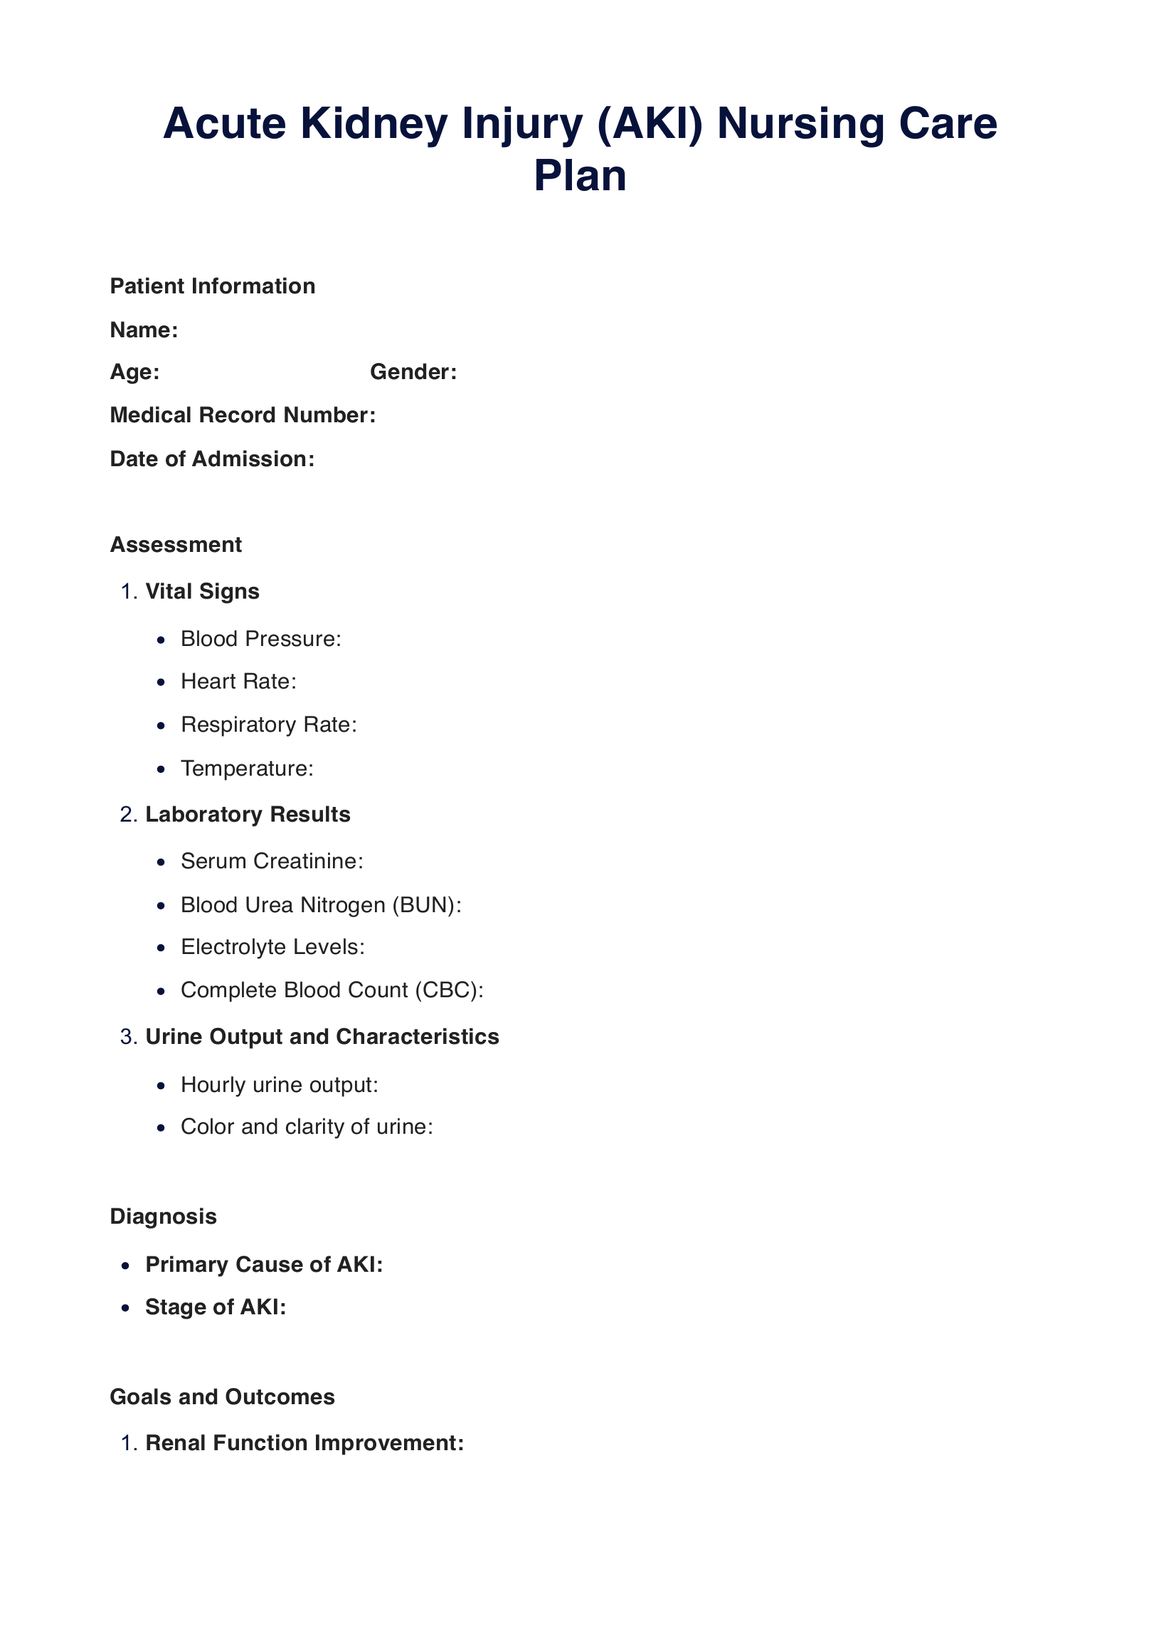 Acute Kidney Injury Nursing Care Plan PDF Example